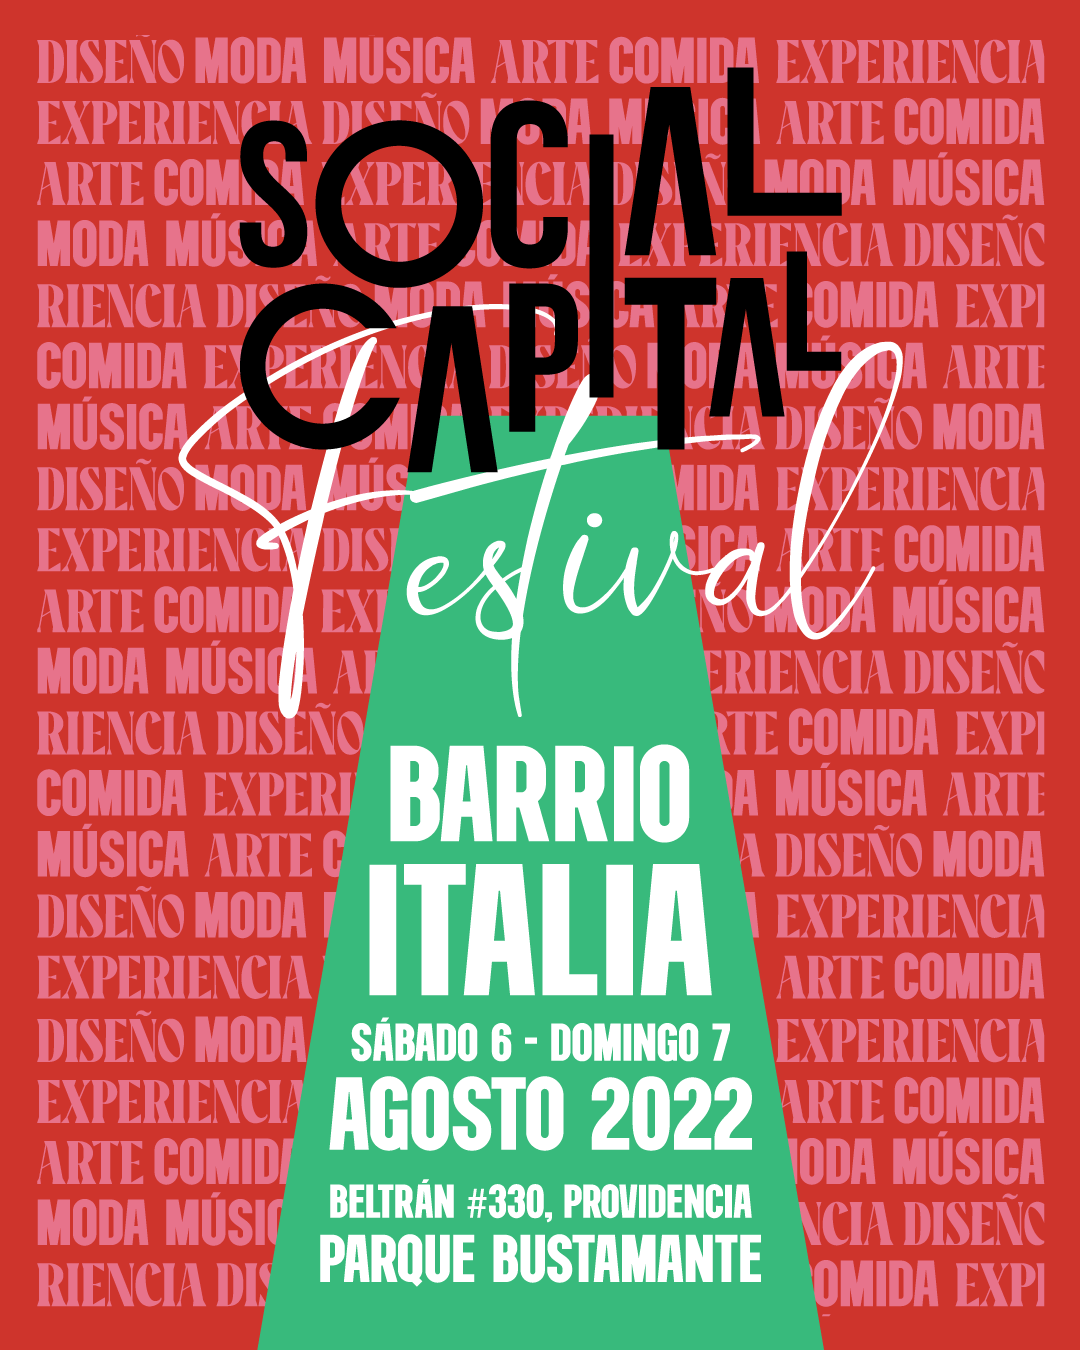 Vuelve Social Capital Festival: El encuentro de moda, diseño y arte